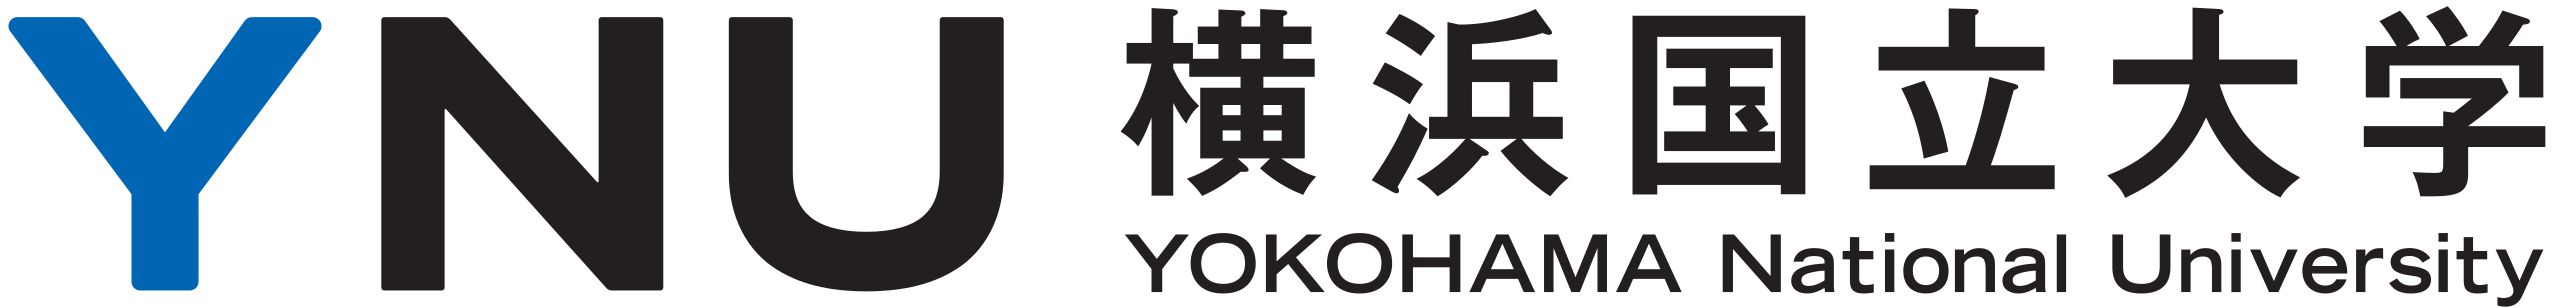 YNU_logo